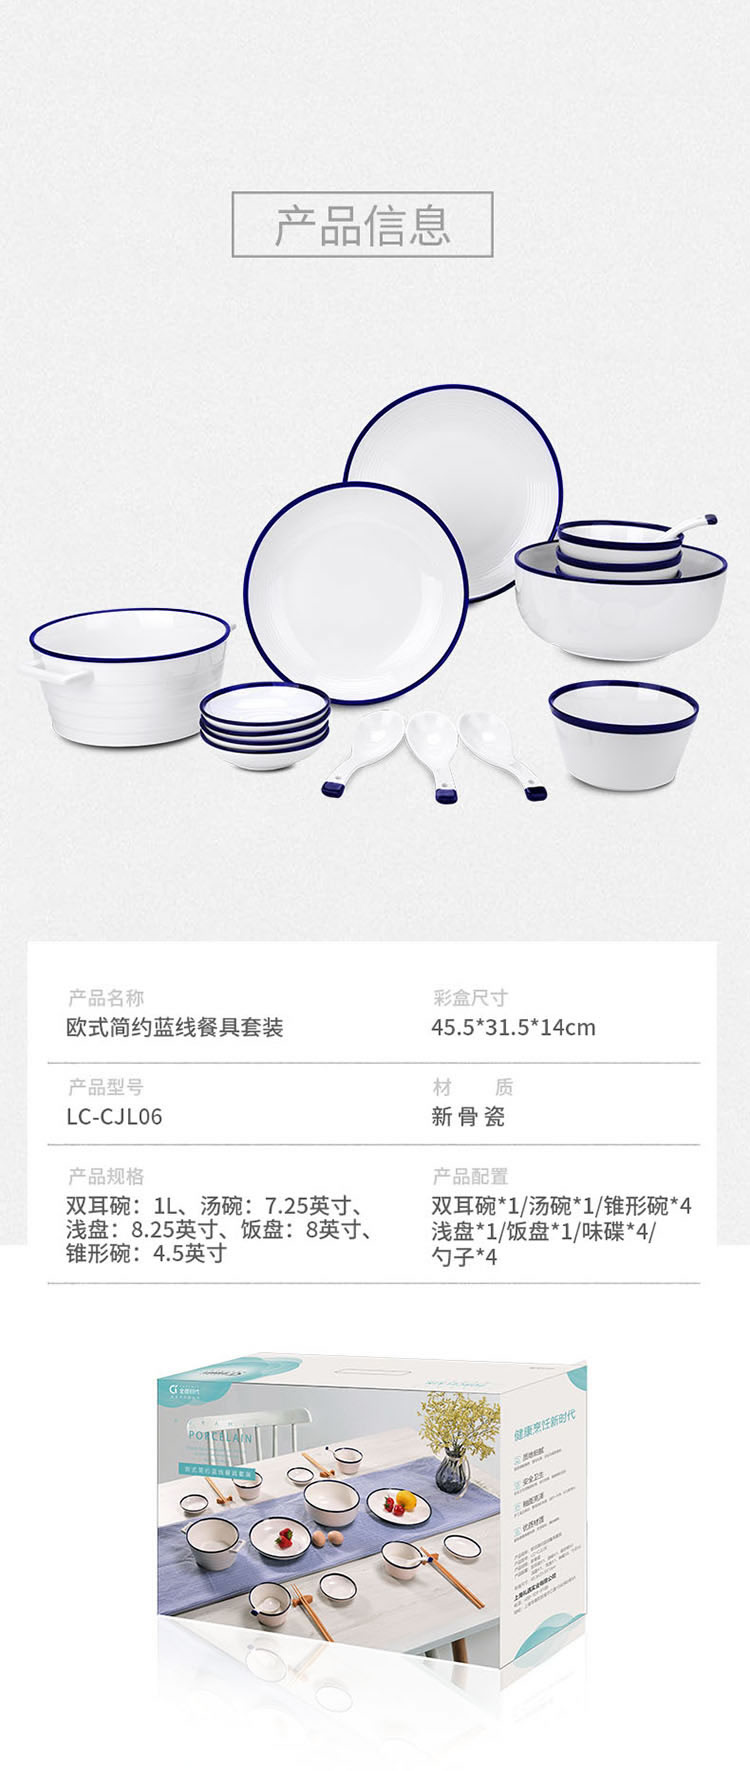 全瓷欧式简约蓝线餐具套装LC-CJL06